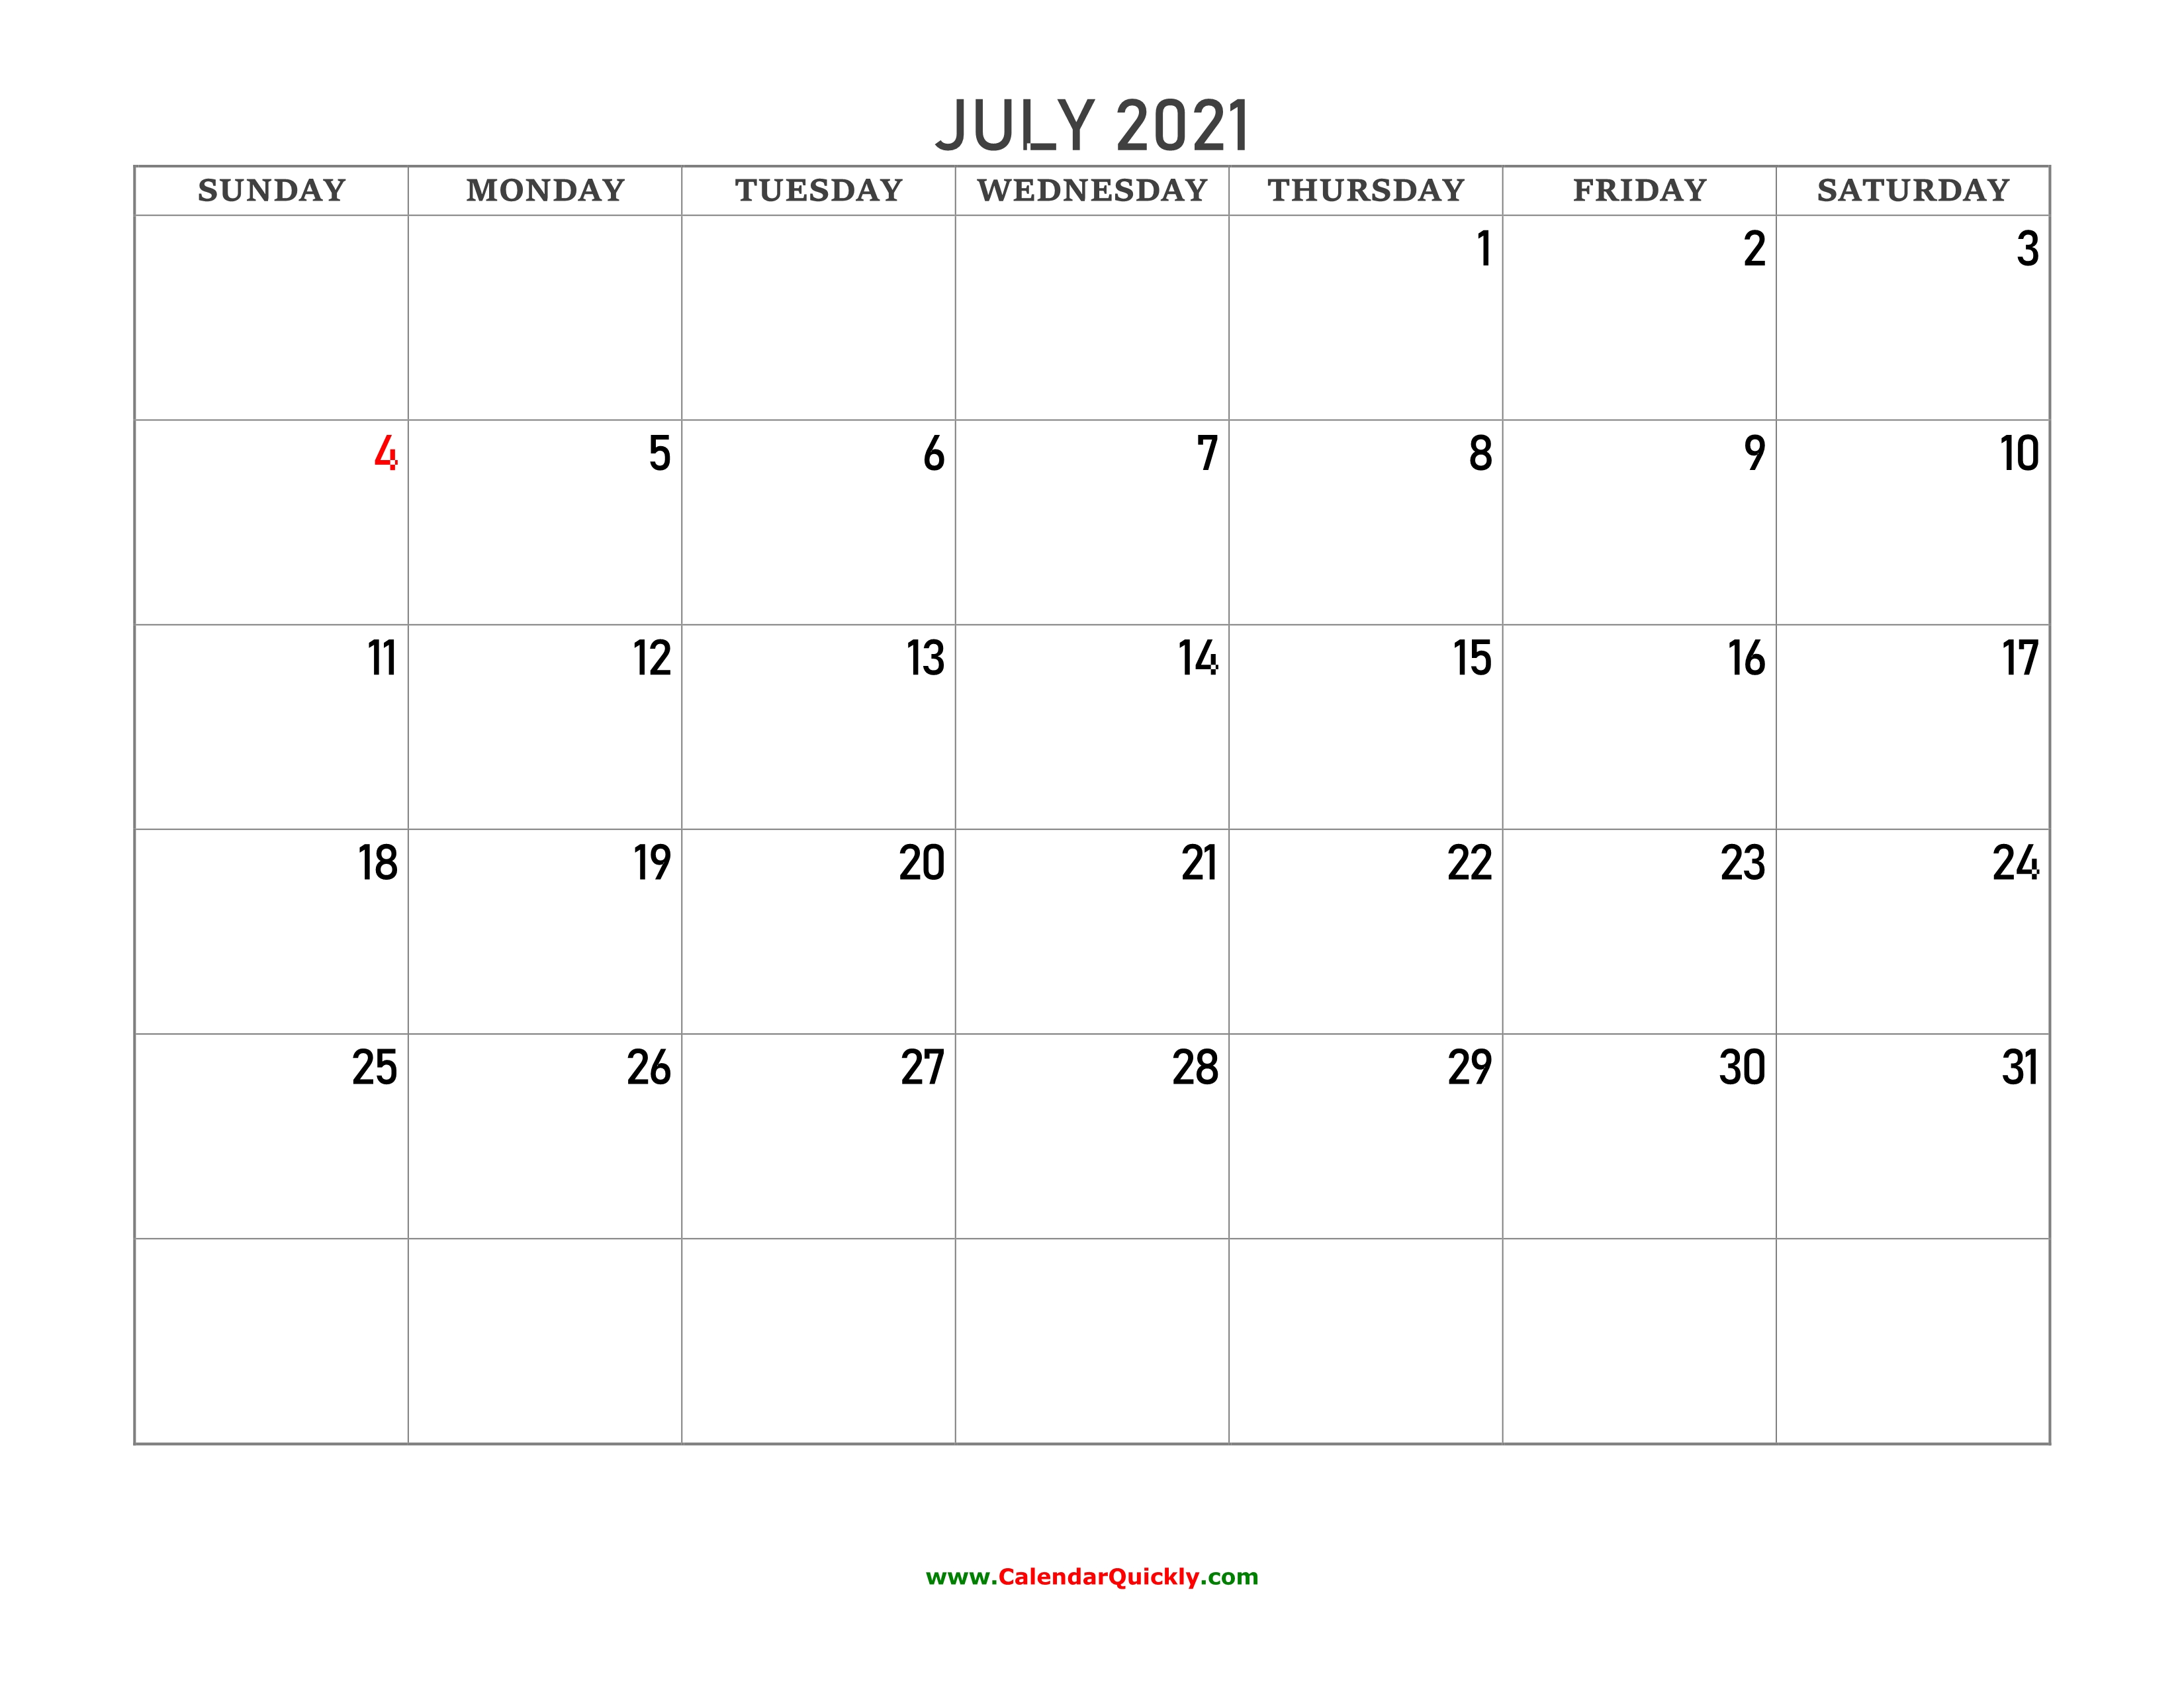 July 2021 Blank Calendar | Calendar Quickly July 2021 Calendar Monday Start